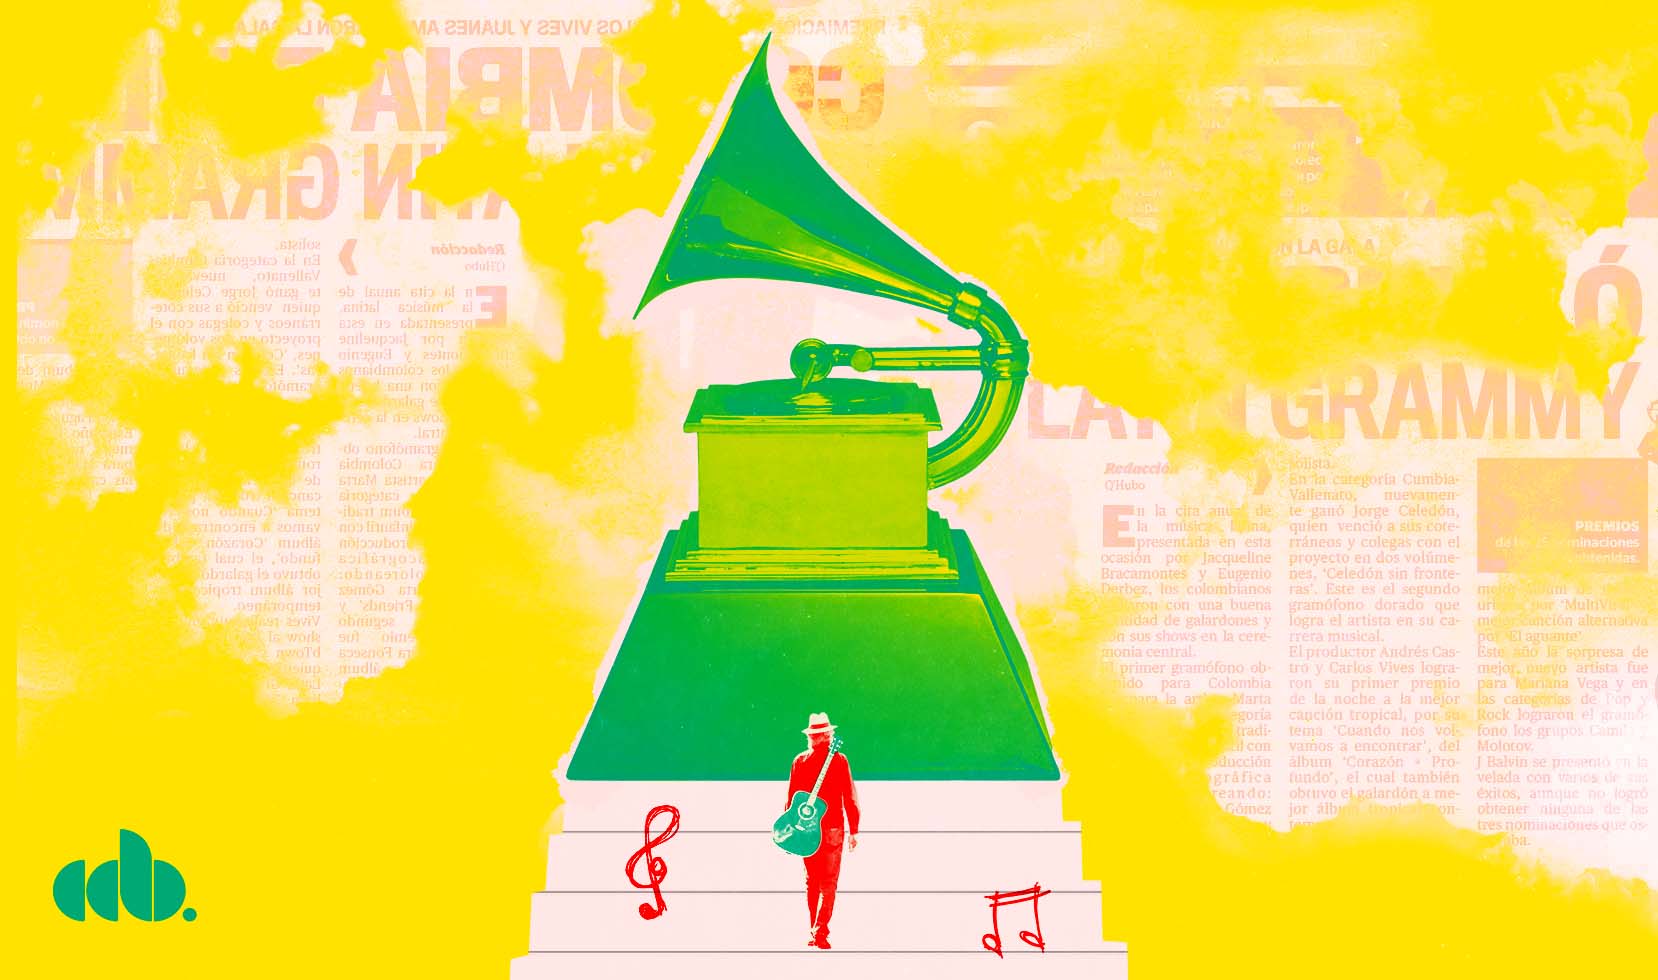 18 artistas de CD Baby nominados a los Latin Grammy 2022